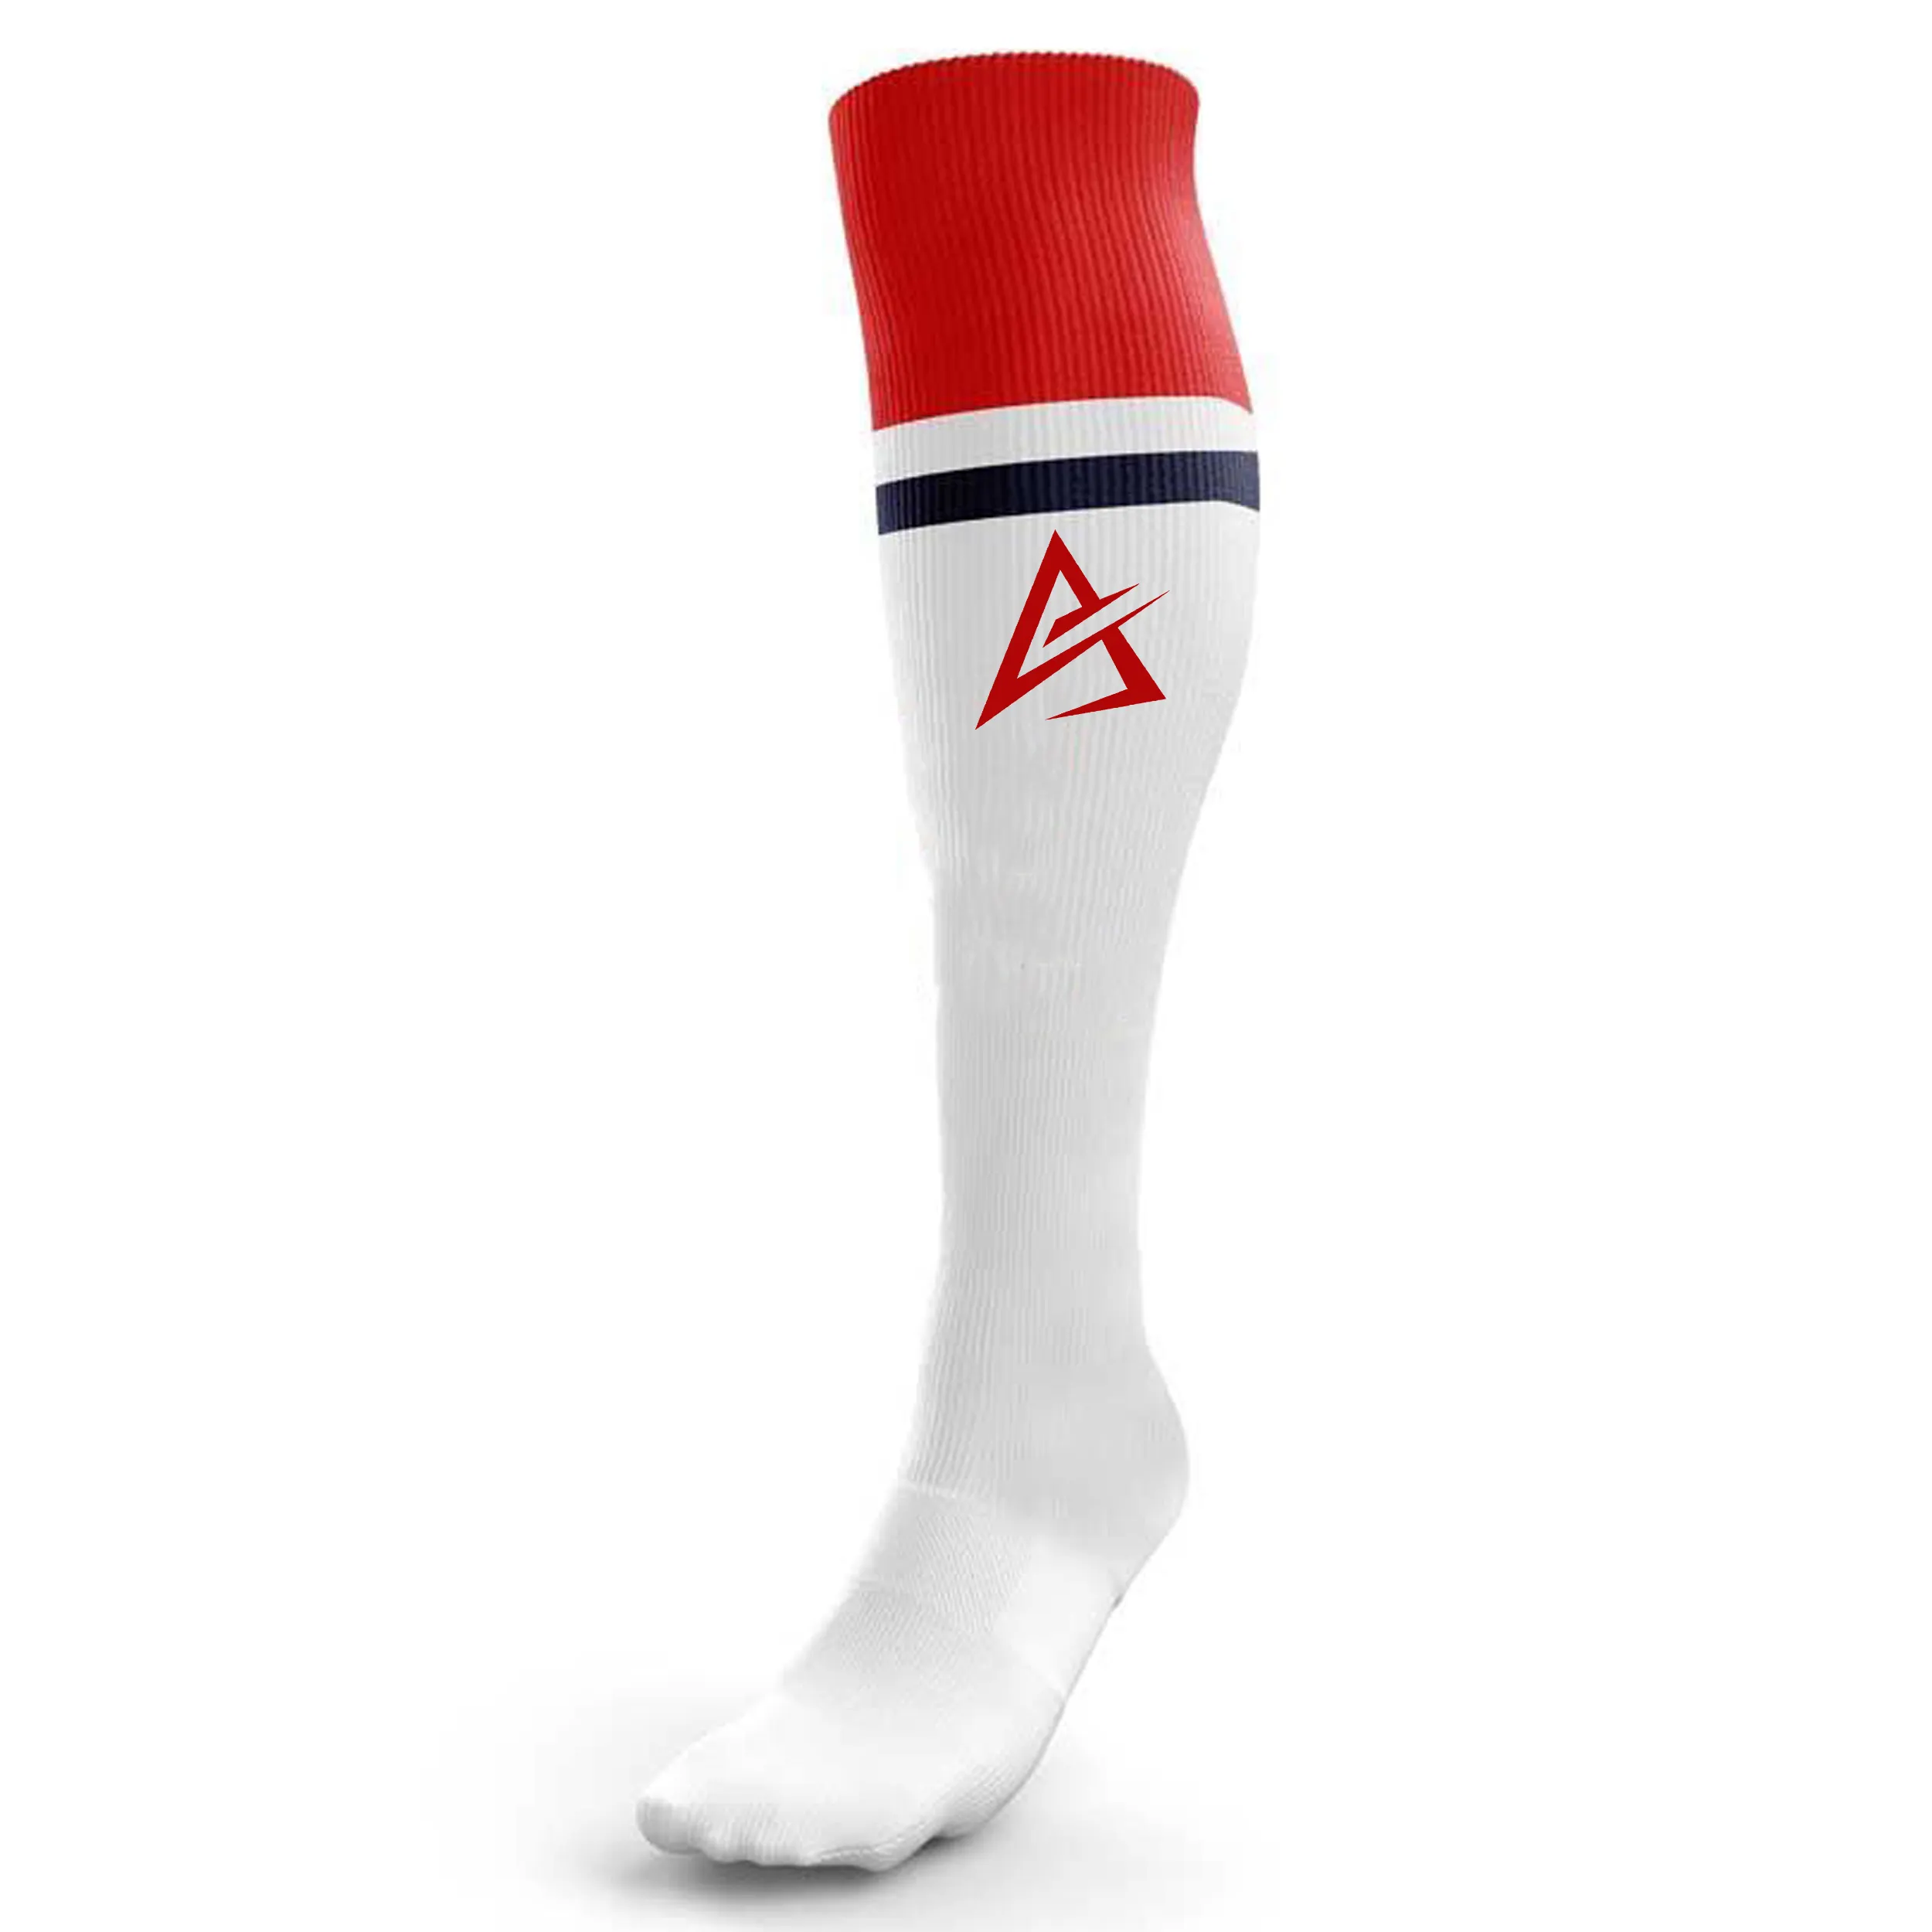 OEM profesyonel spor çorapları yüksek kalite açık özel tasarım spor çorapları toptan özel örme Logo çorap